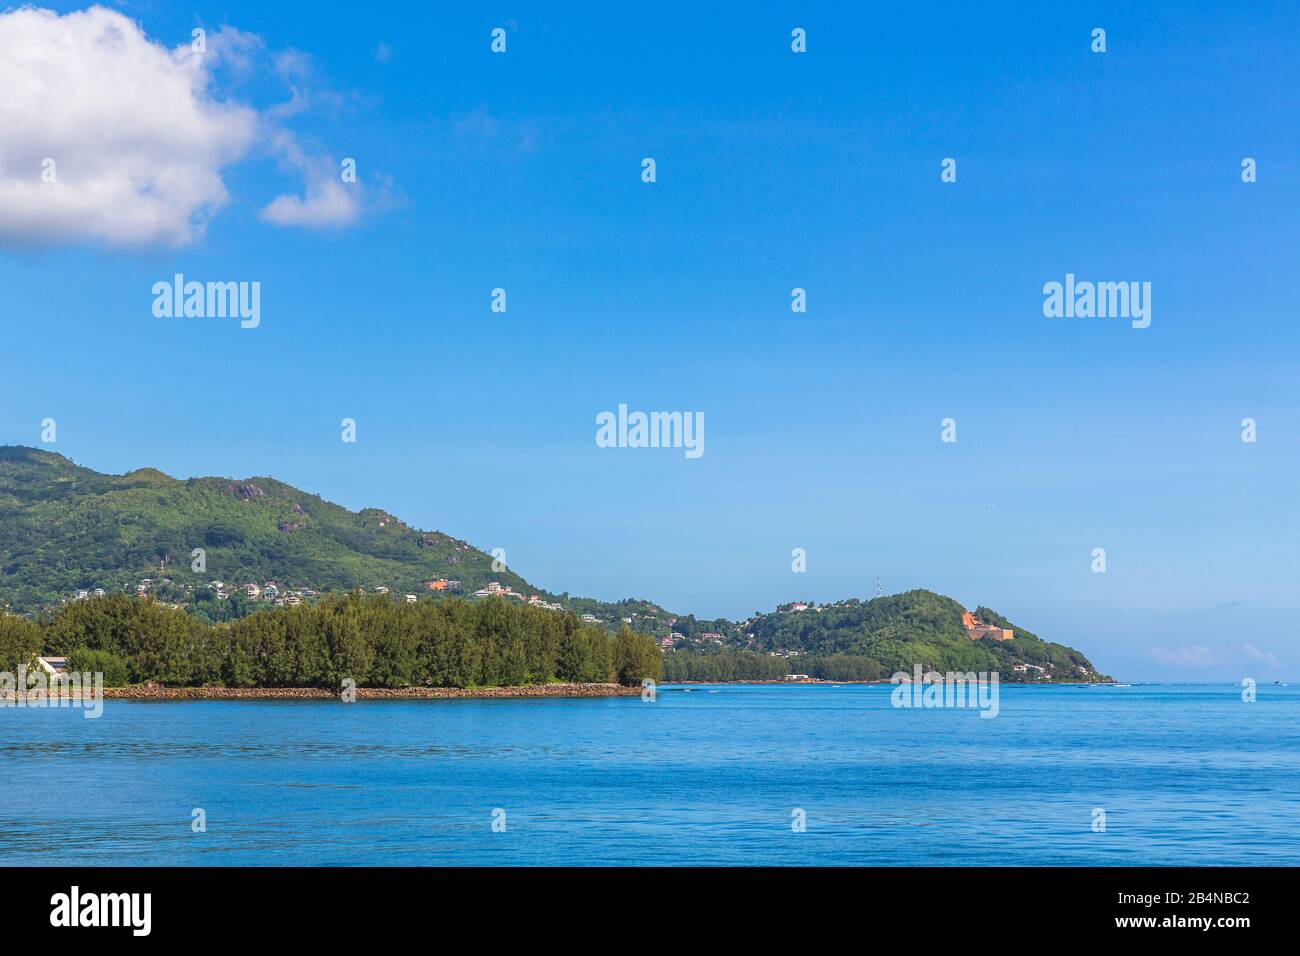 Insel Mahe, Seychellen, Indischer Ozean, Afrika Stock Photo